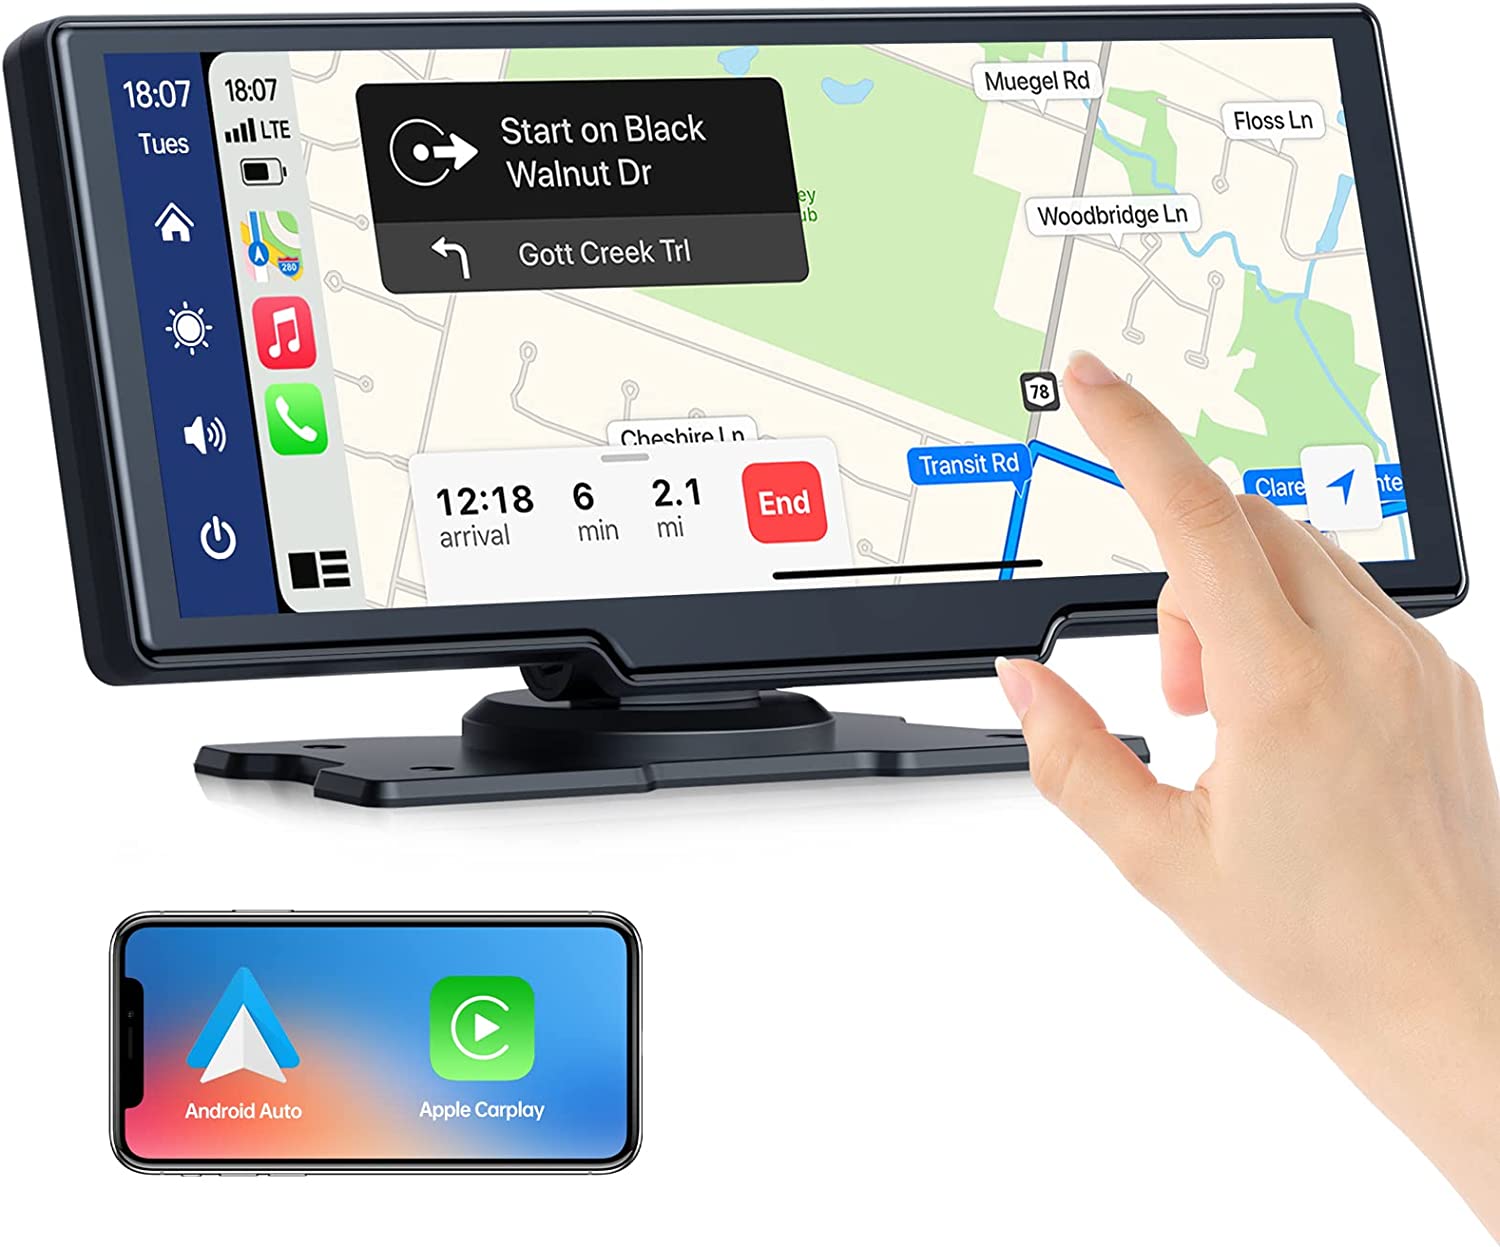 Smart World Company 10-Inch Wireless CarPlay and Android Auto Retrofit Display any Car